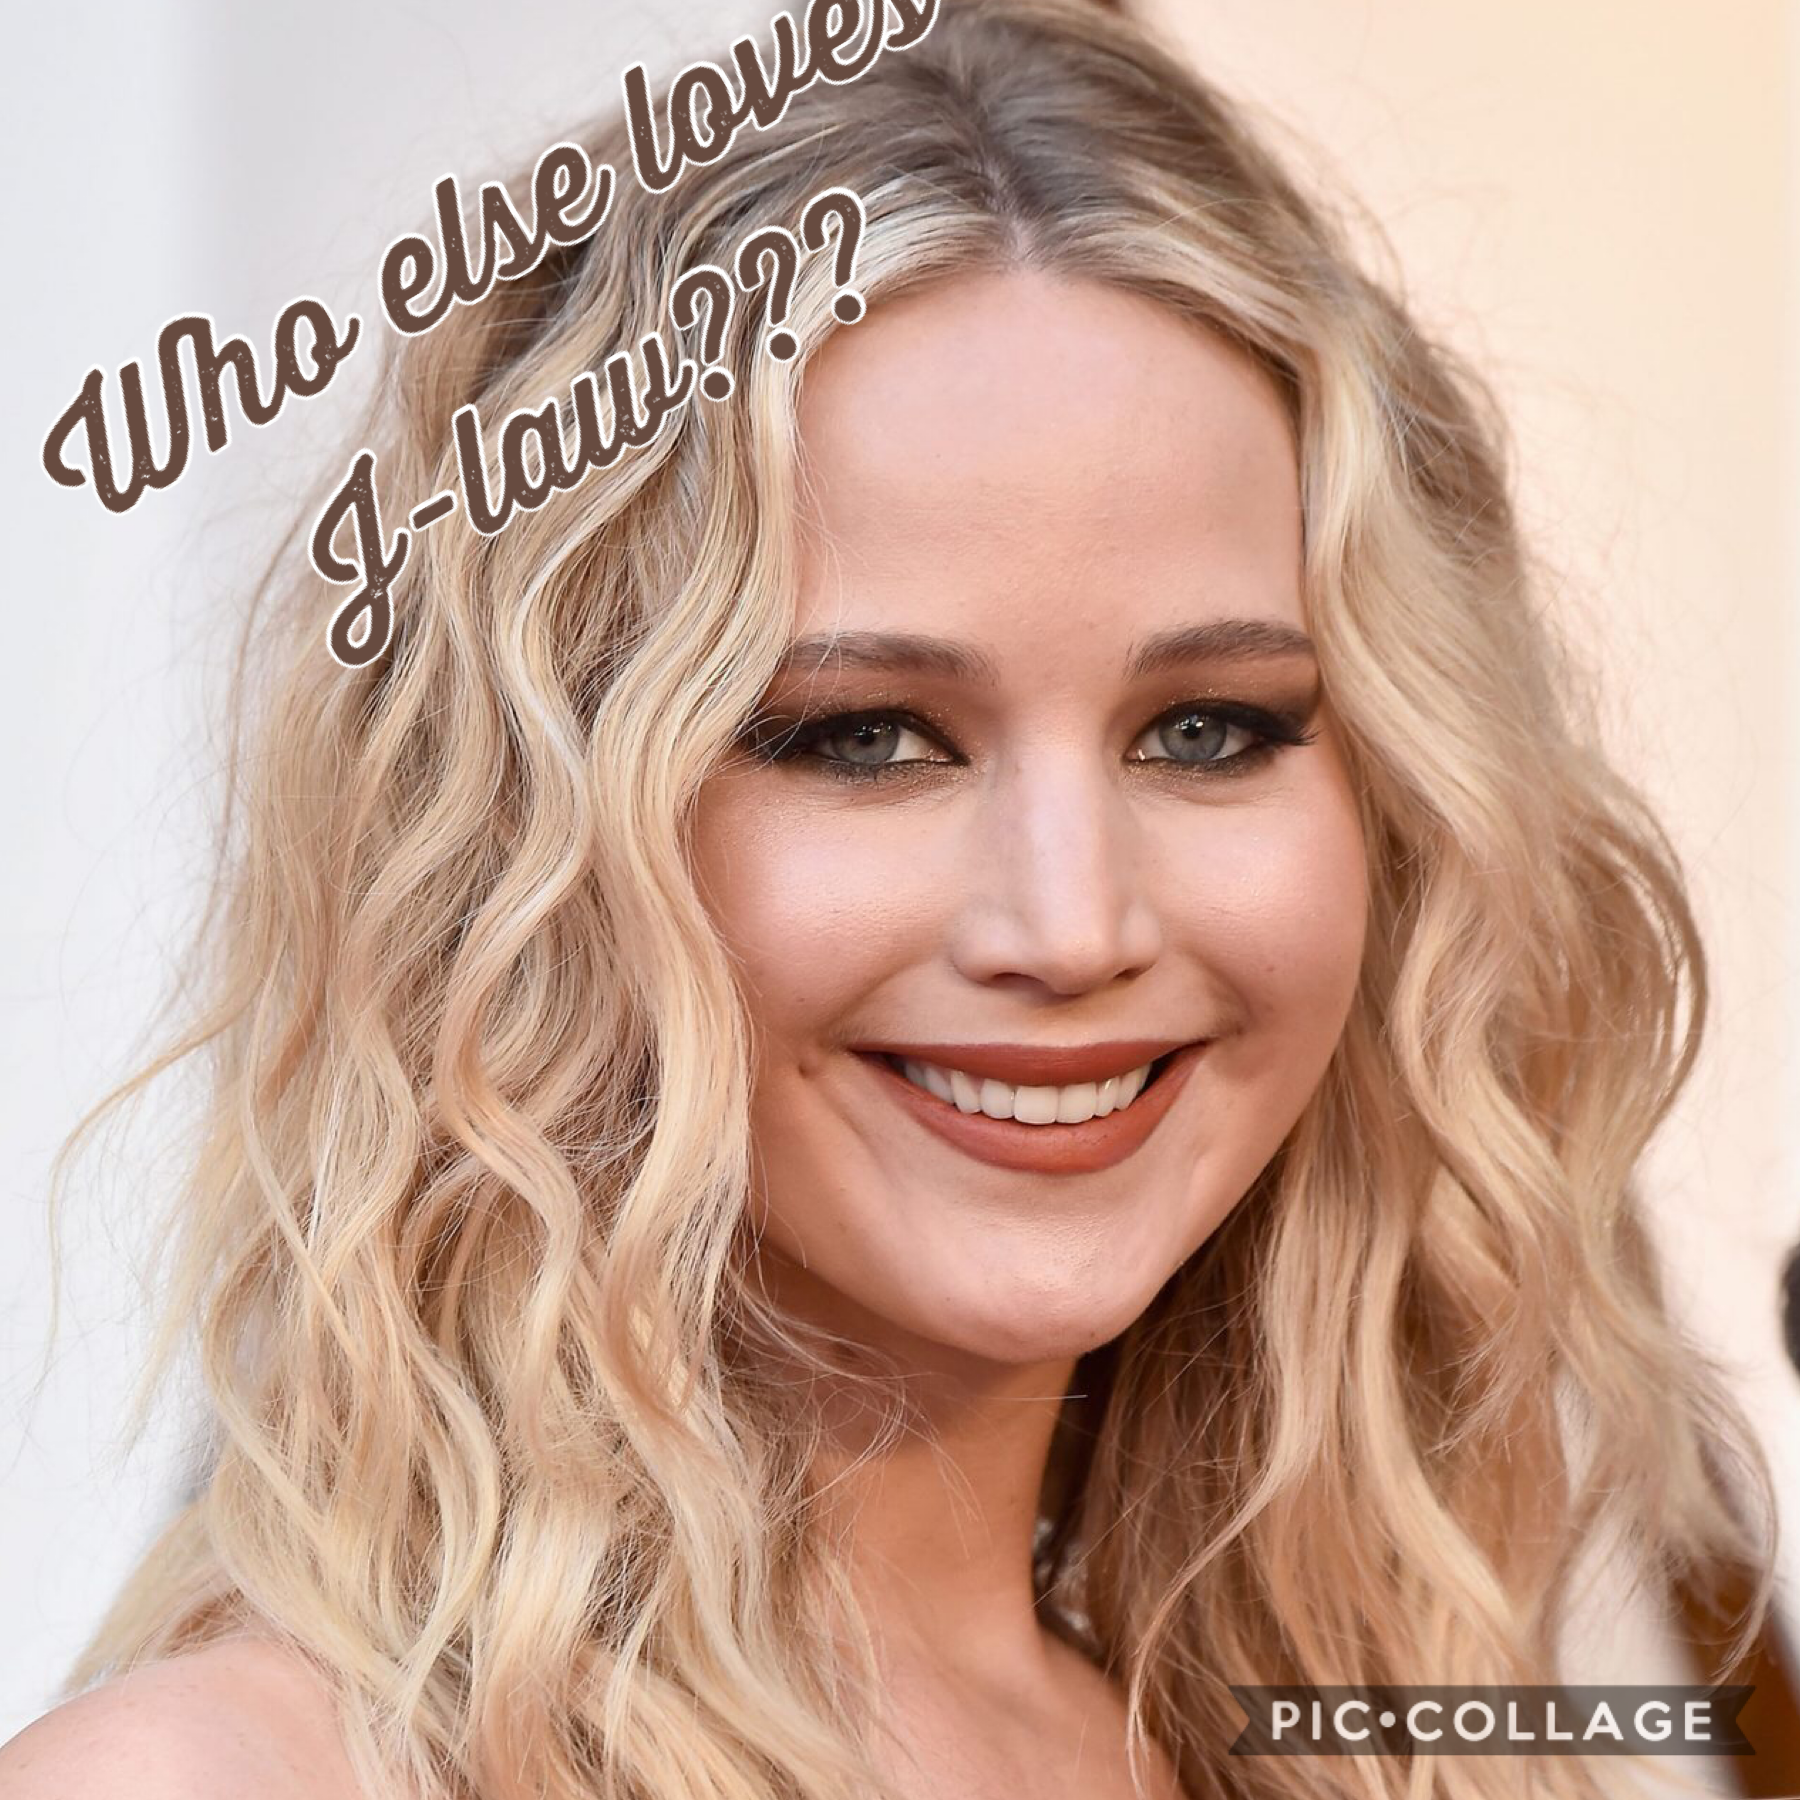 Who else LOVES Jennifer Lawrence???

ME!!!